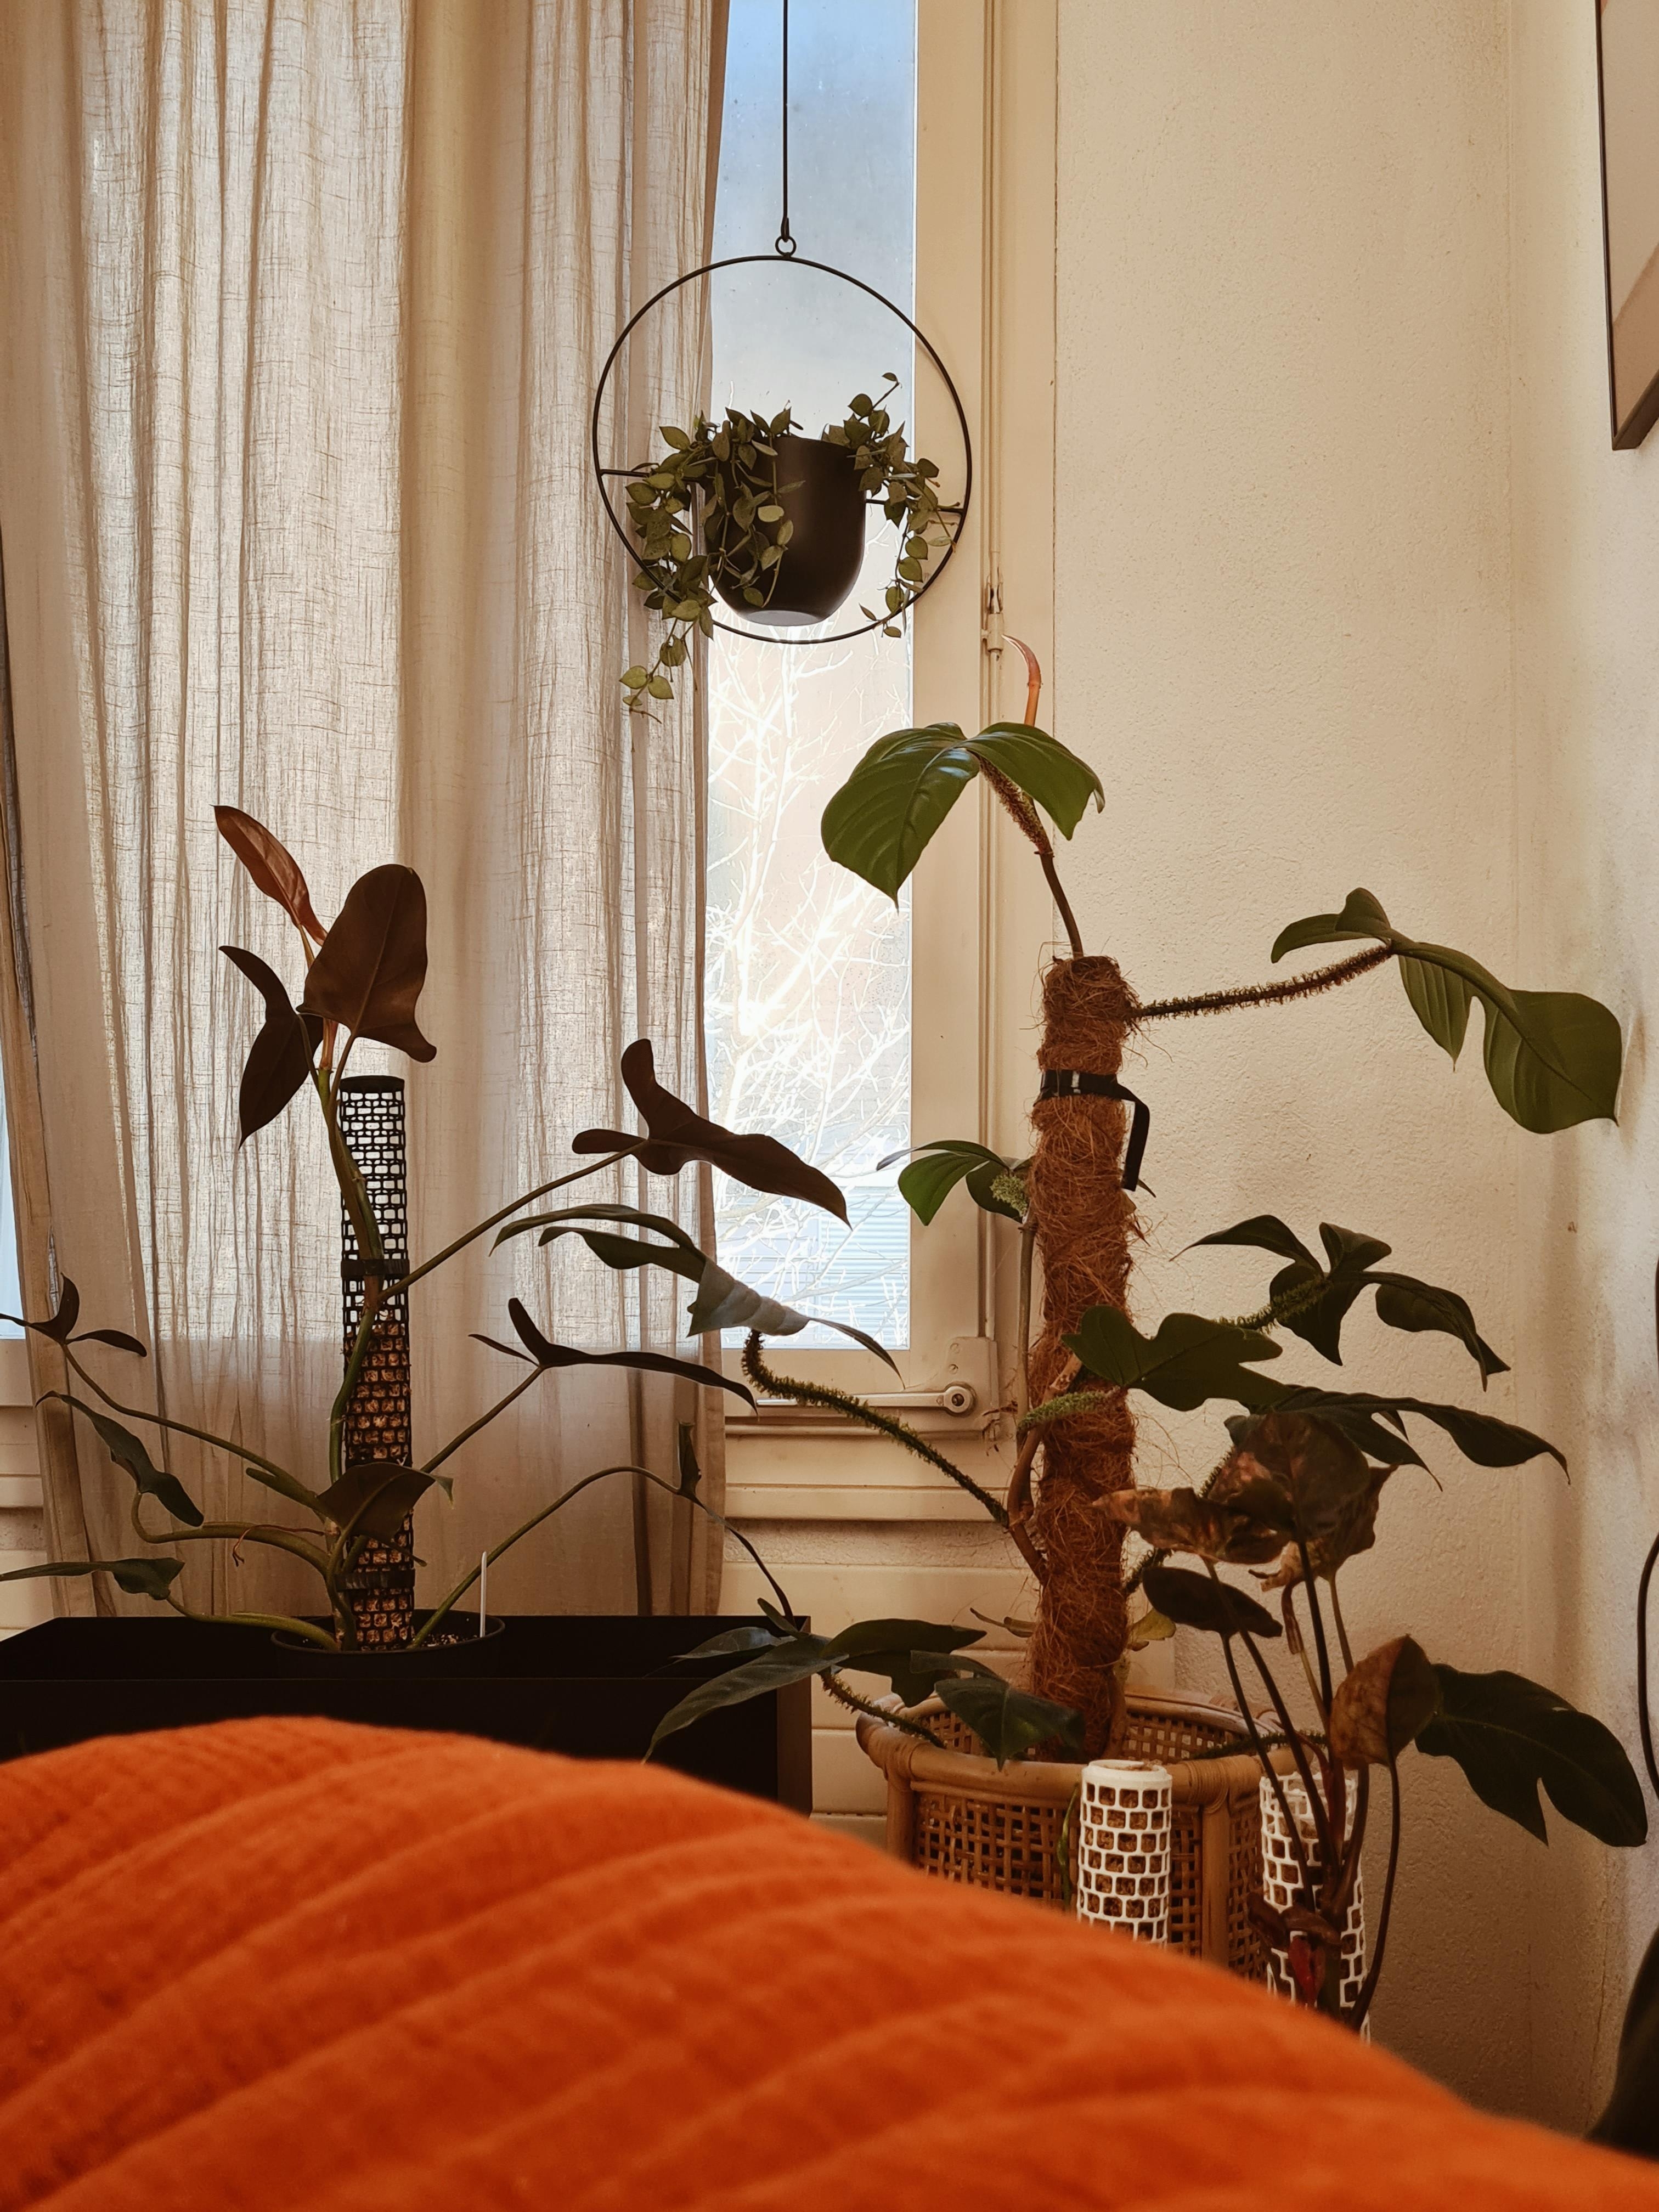 Allen einen schönen Tag
#pflanzenliebe #urbanjungle #home #interior #pflanzenmutti